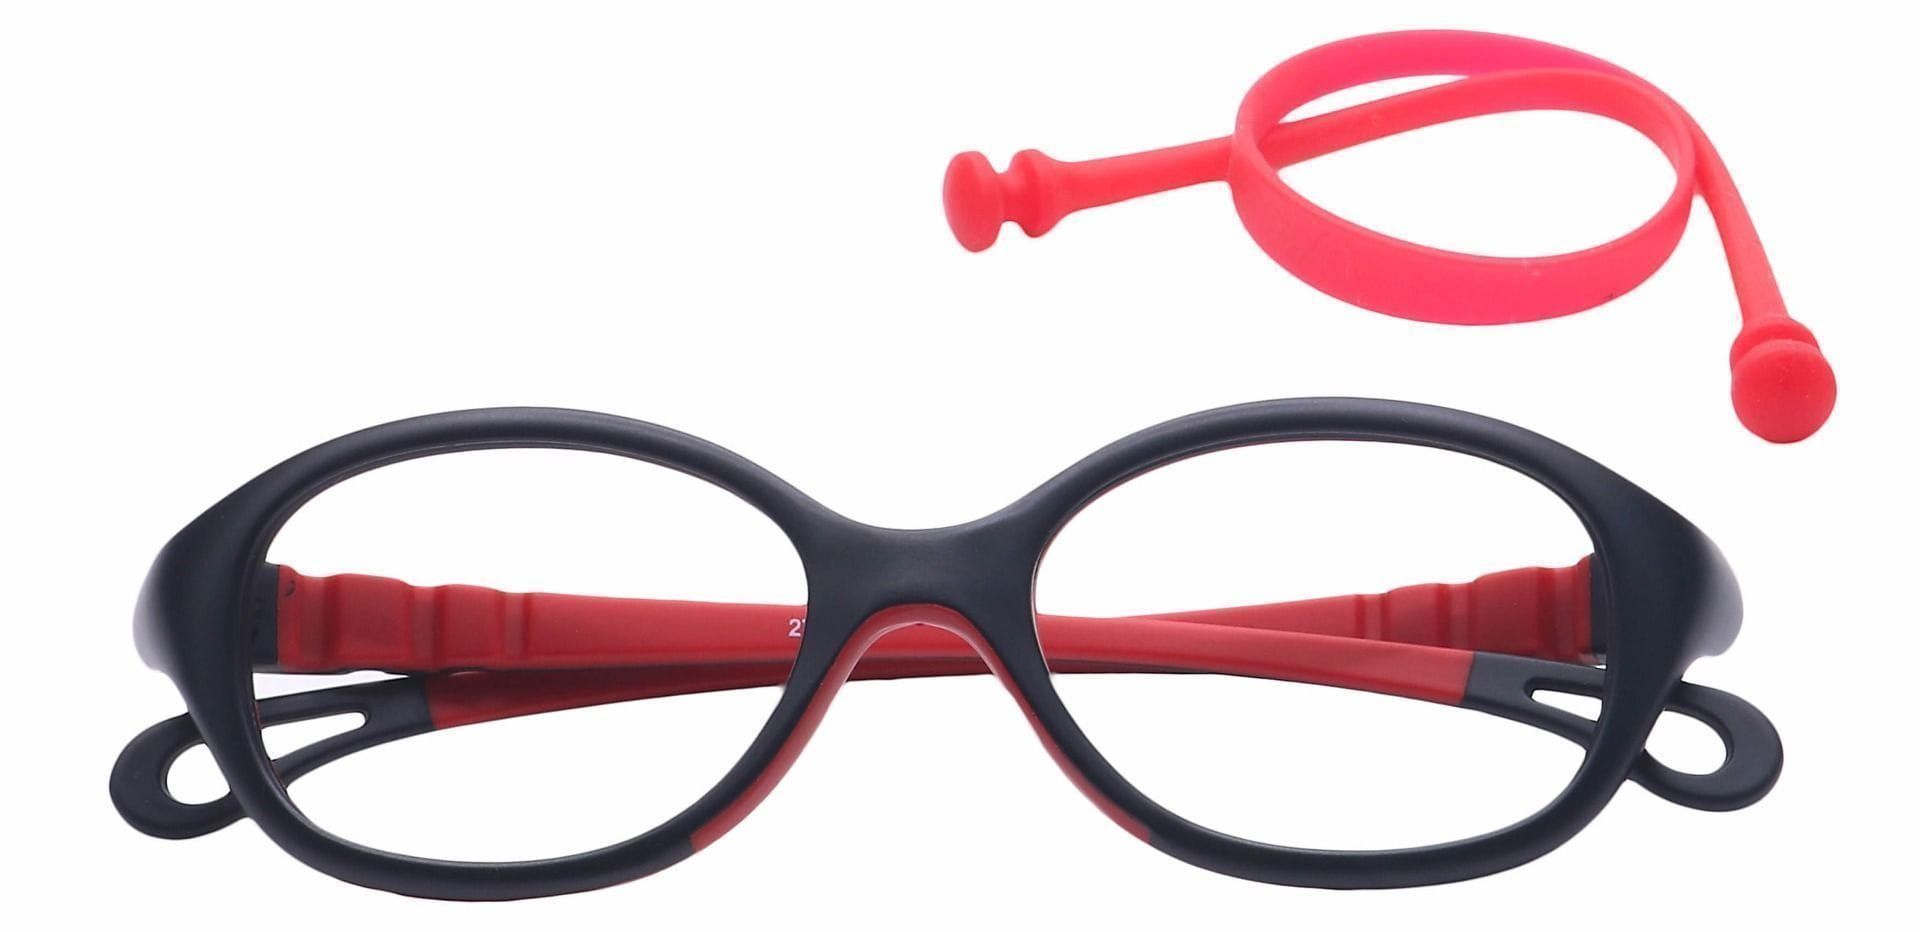 Quirk Oval Eyeglasses Frame - Black